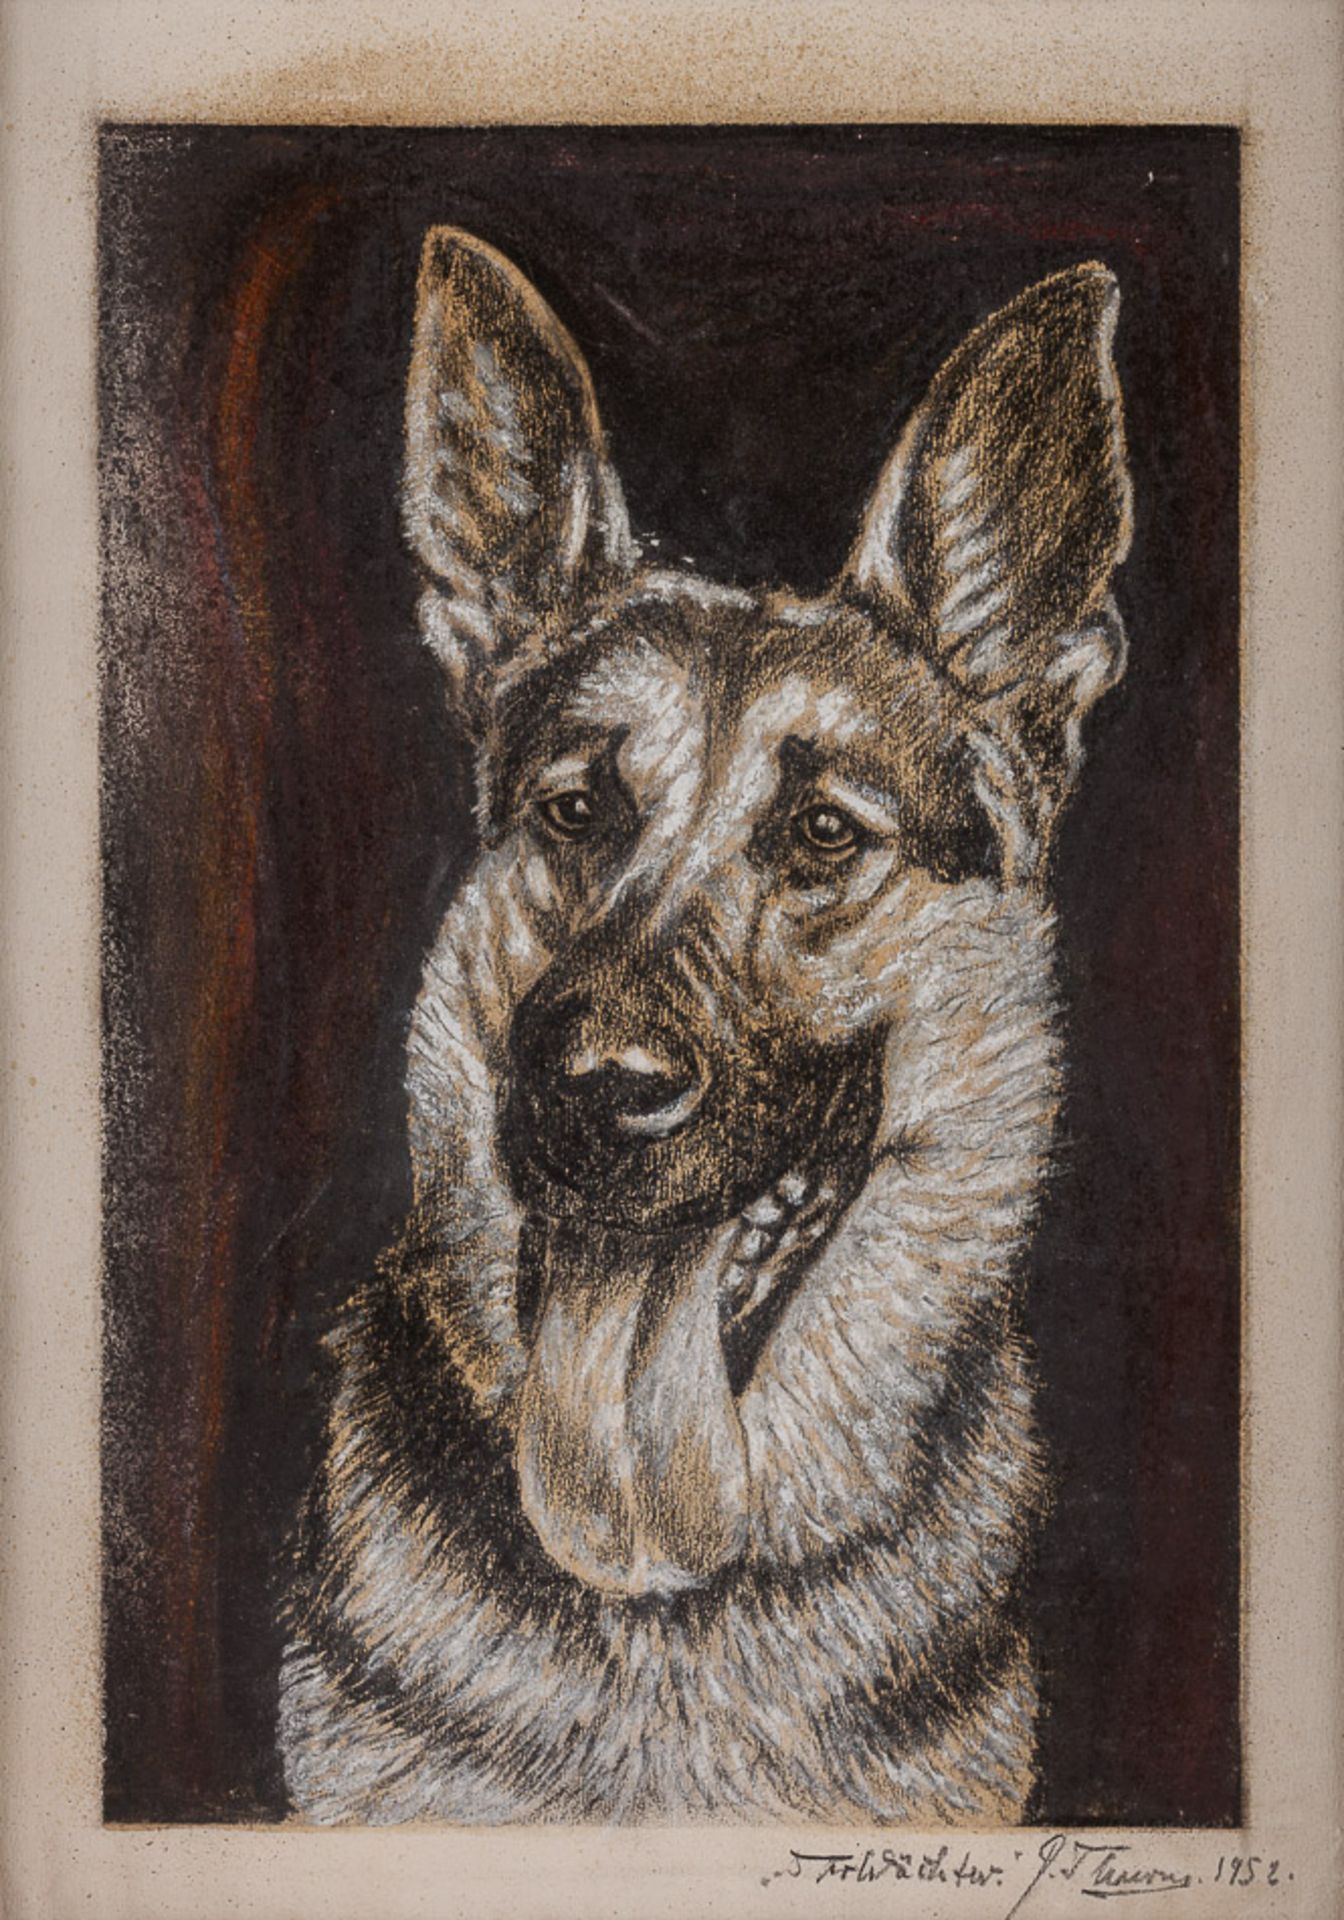 P.Thurns 20. Jhd."Schäferhund"
Aquarell-Zeichnung, Mischtechnik-weissgehöht, 
36 cm x 26 cm,